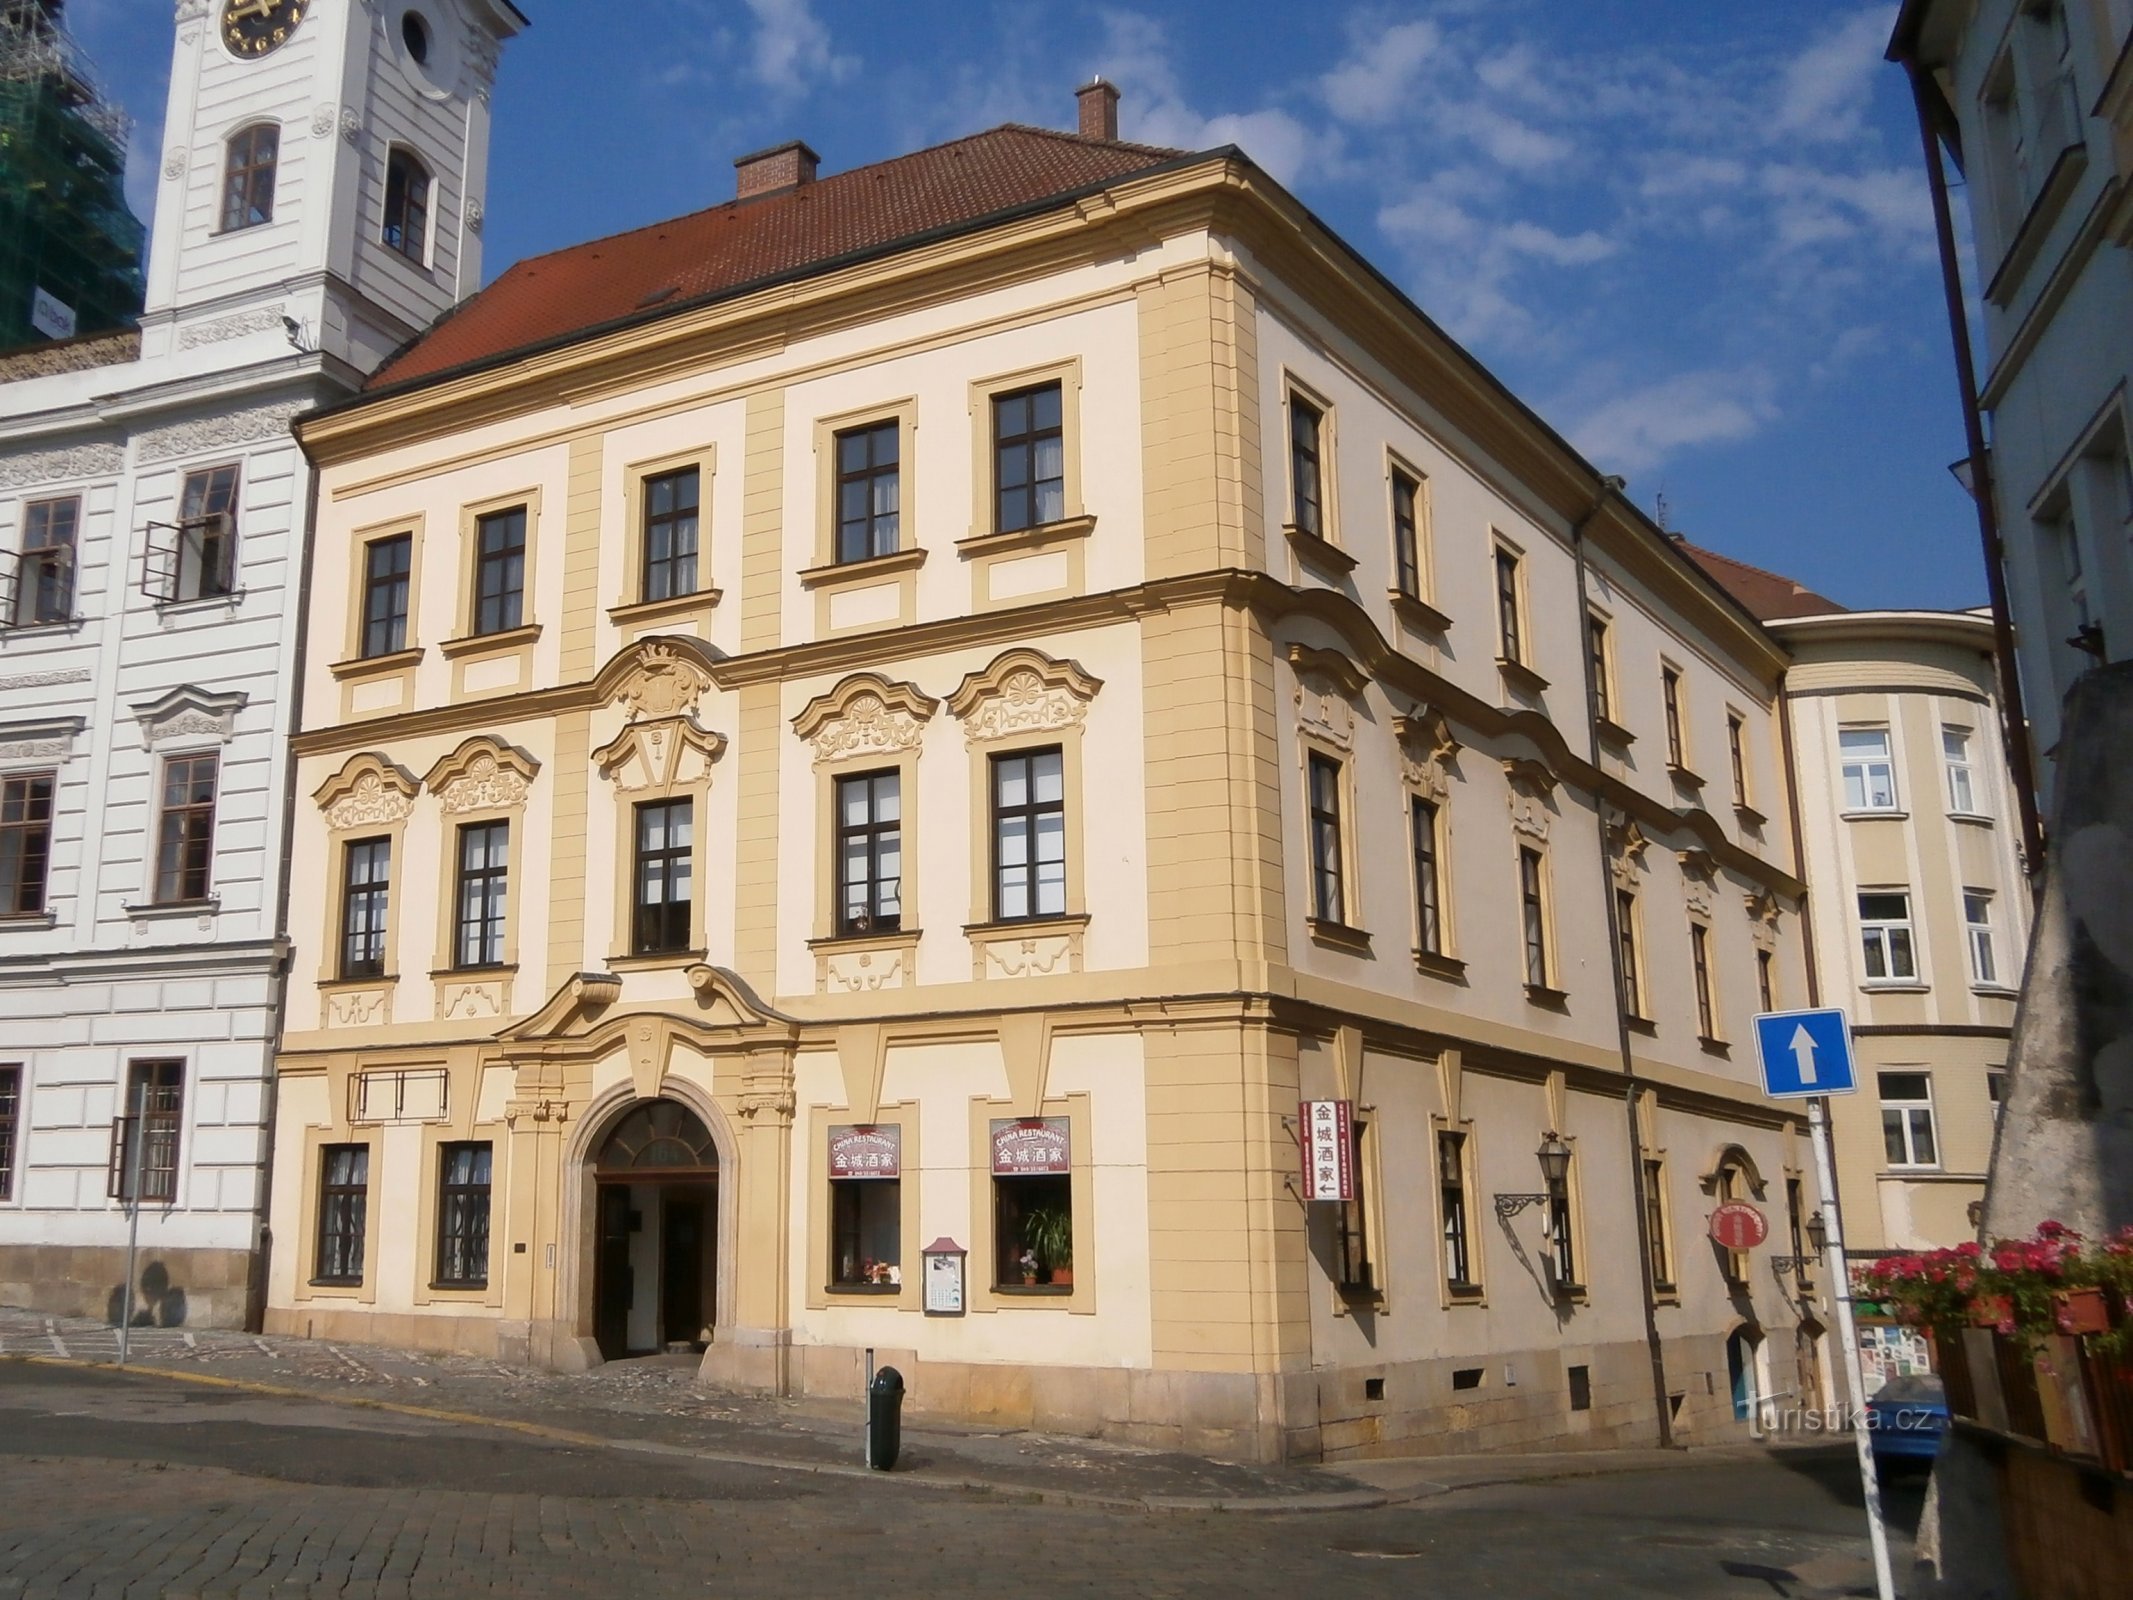 Velké náměstí nr 164 (Hradec Králové, 8.7.2014)